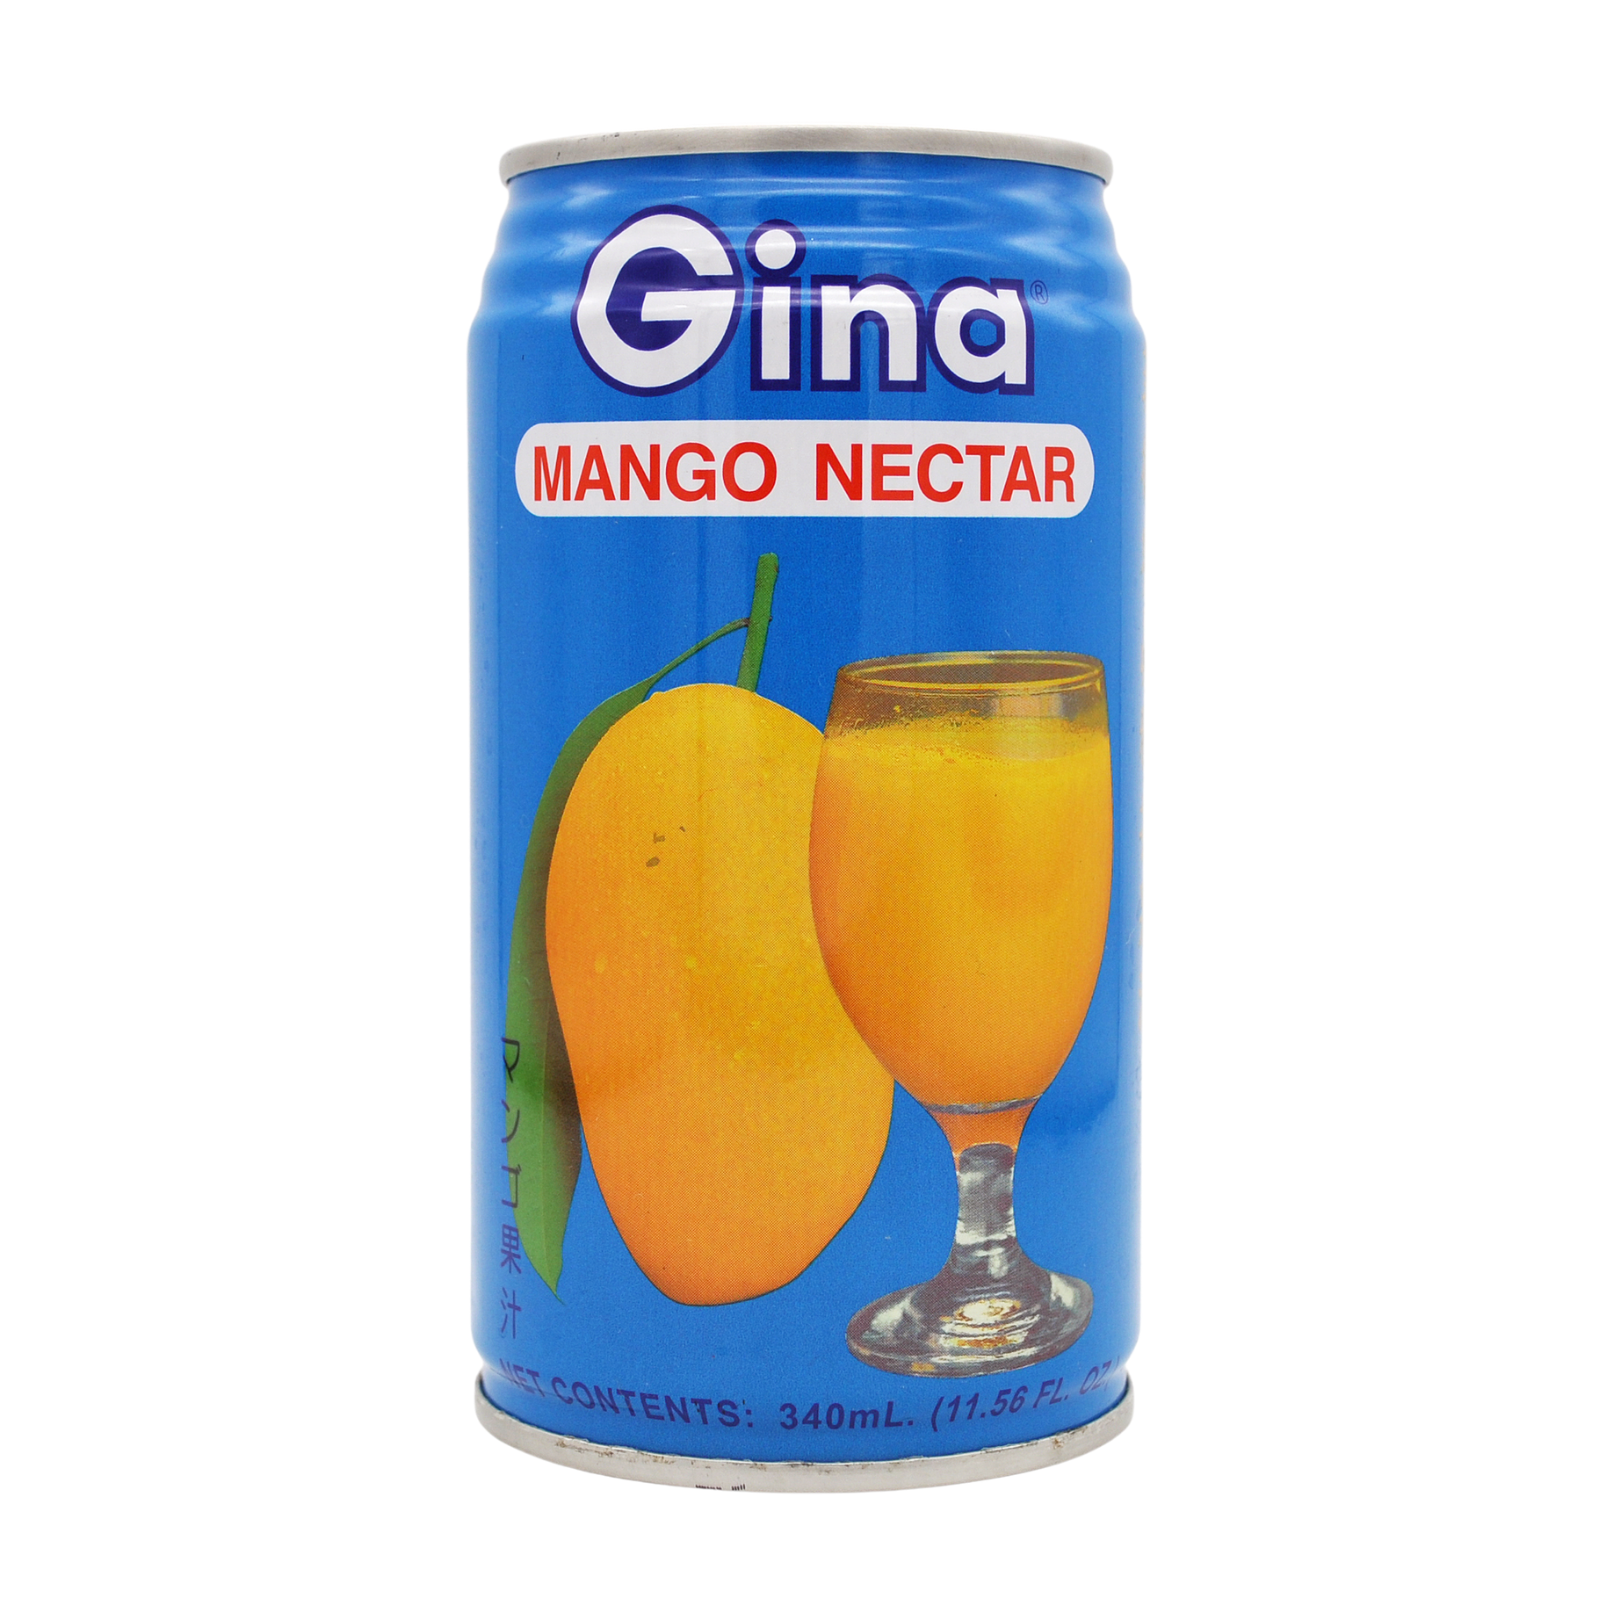 Filipino mango nectar (340ml can) by Gina